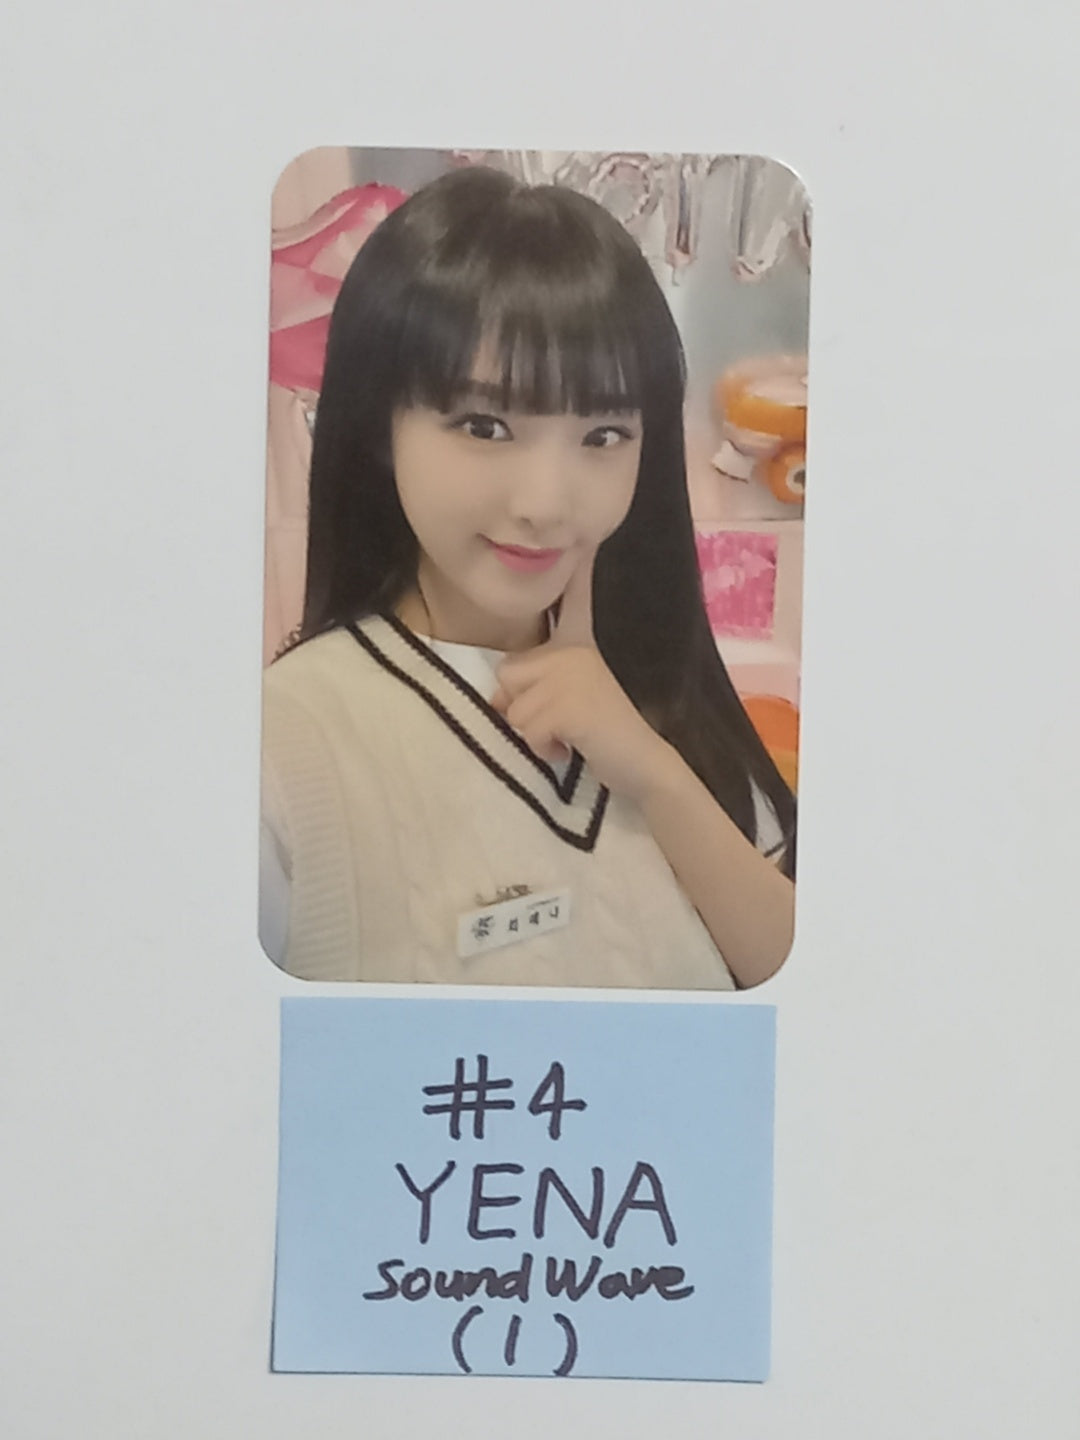 YENA "Yena Day Cafe" - Soundwave Event Photocard